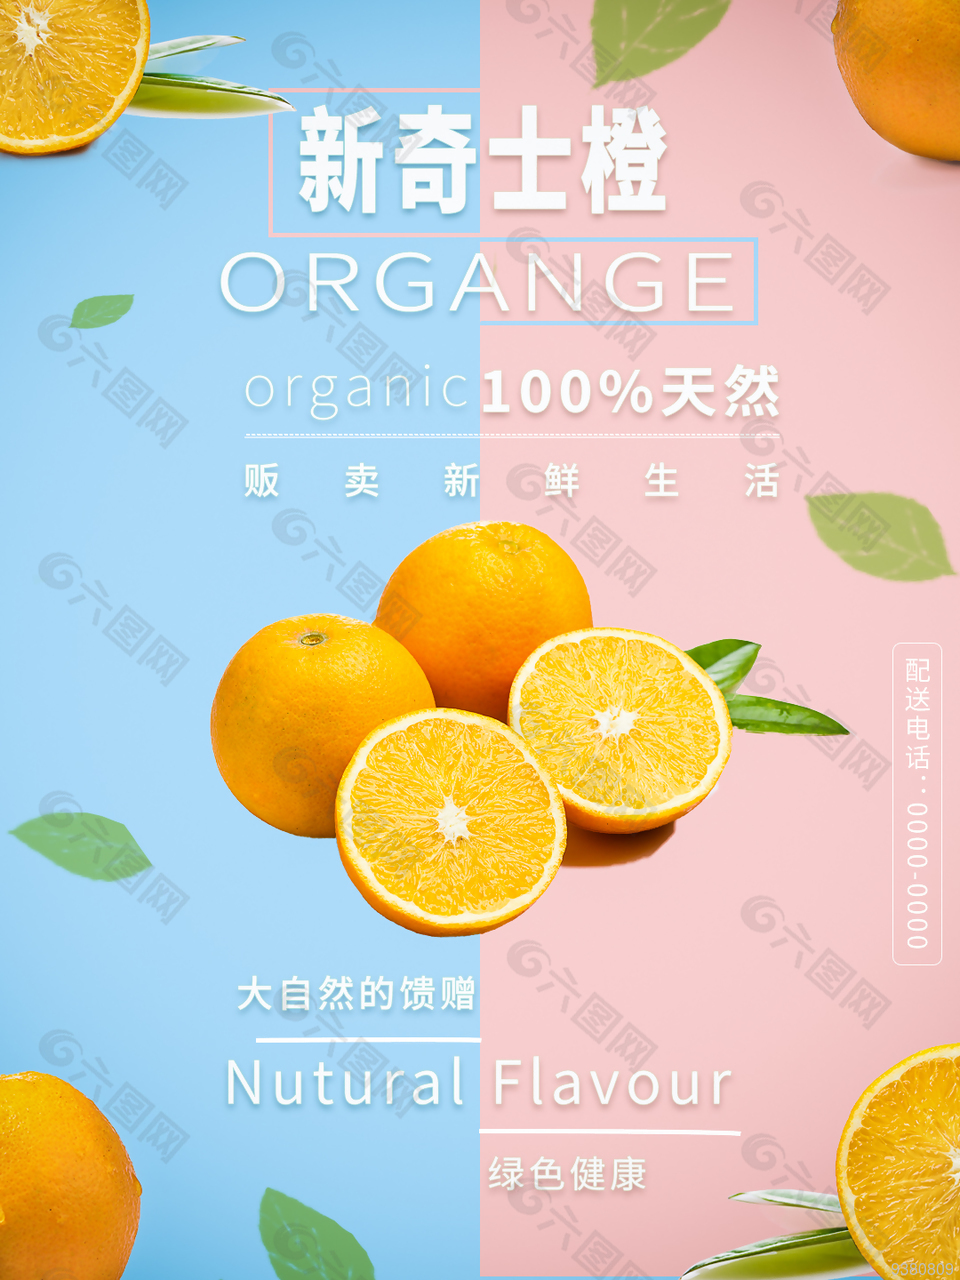 夏日果汁飲品宣傳海報